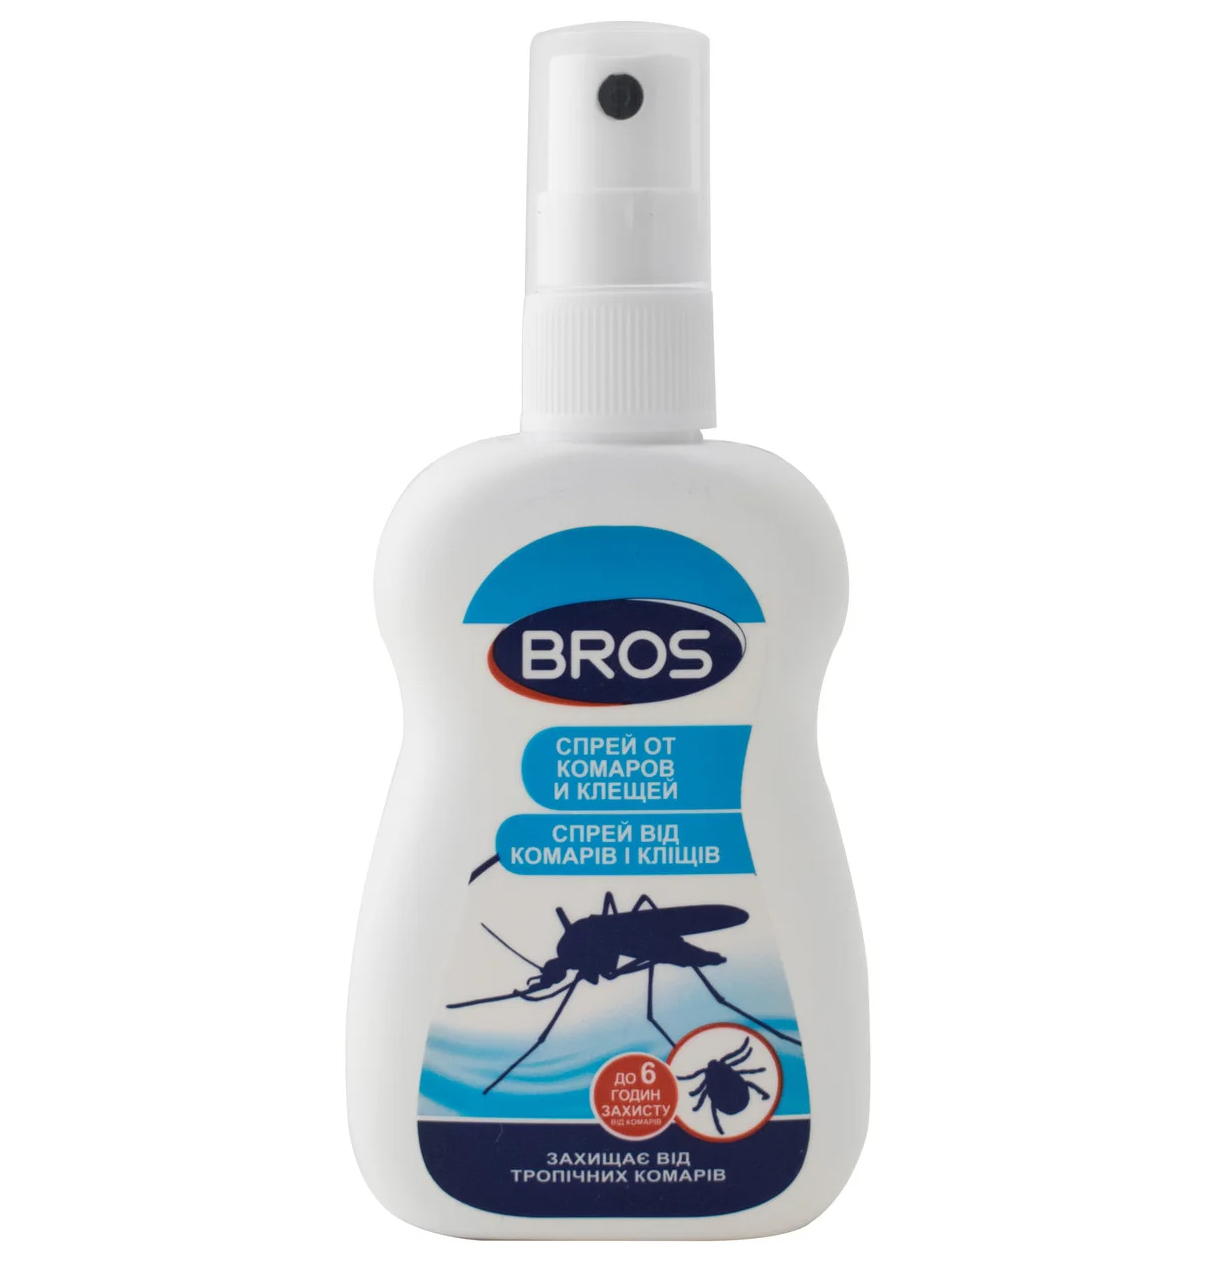 Средство репеллентное BROS спрей от комаров и клещей 50 мл (MKU-61248)